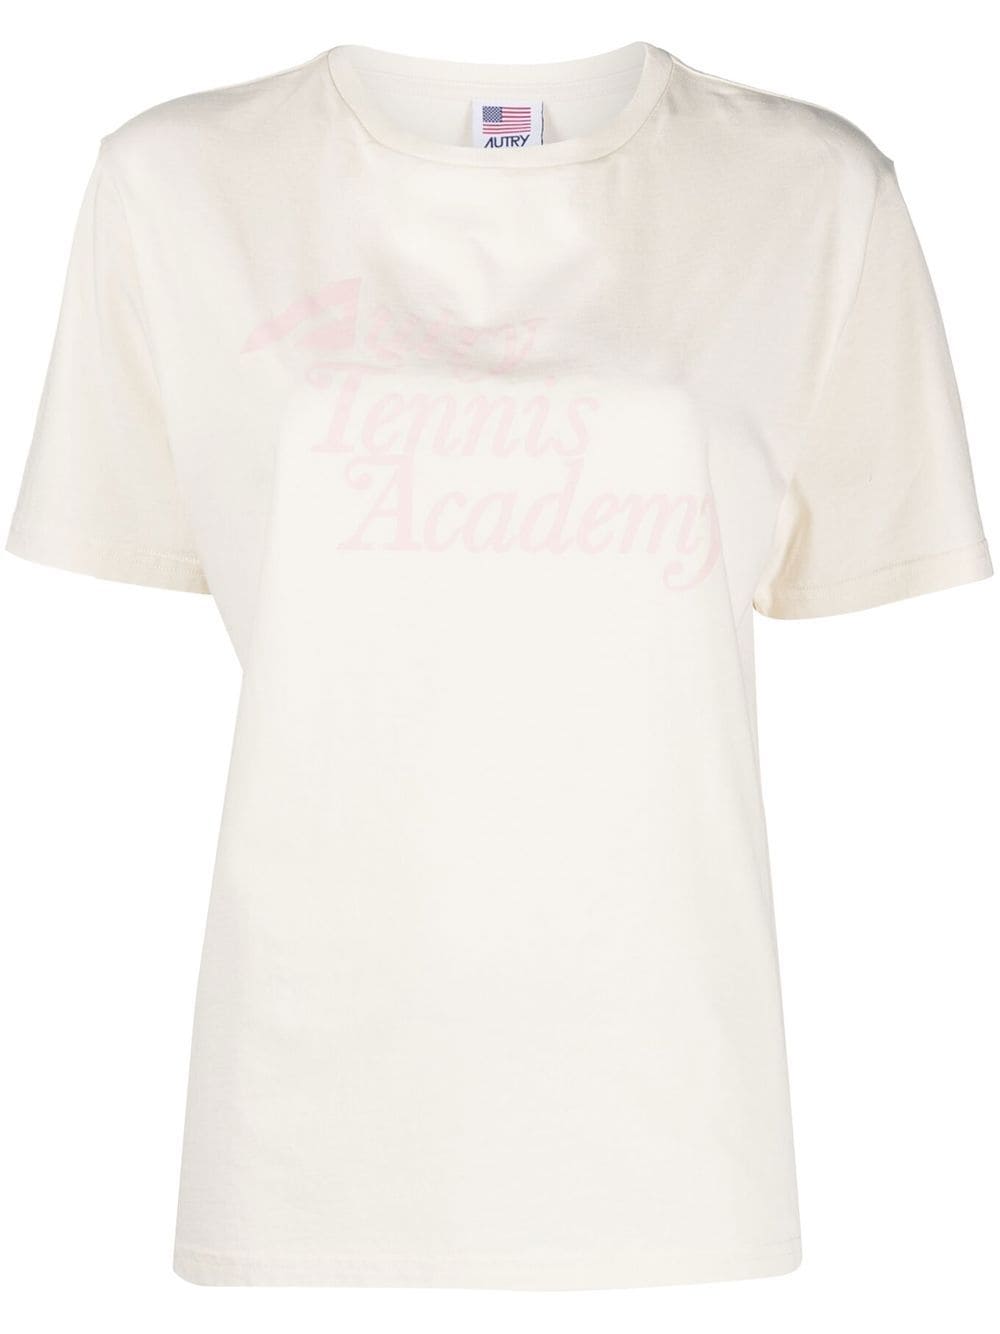 autry t-shirt à imprimé tennis academy - blanc